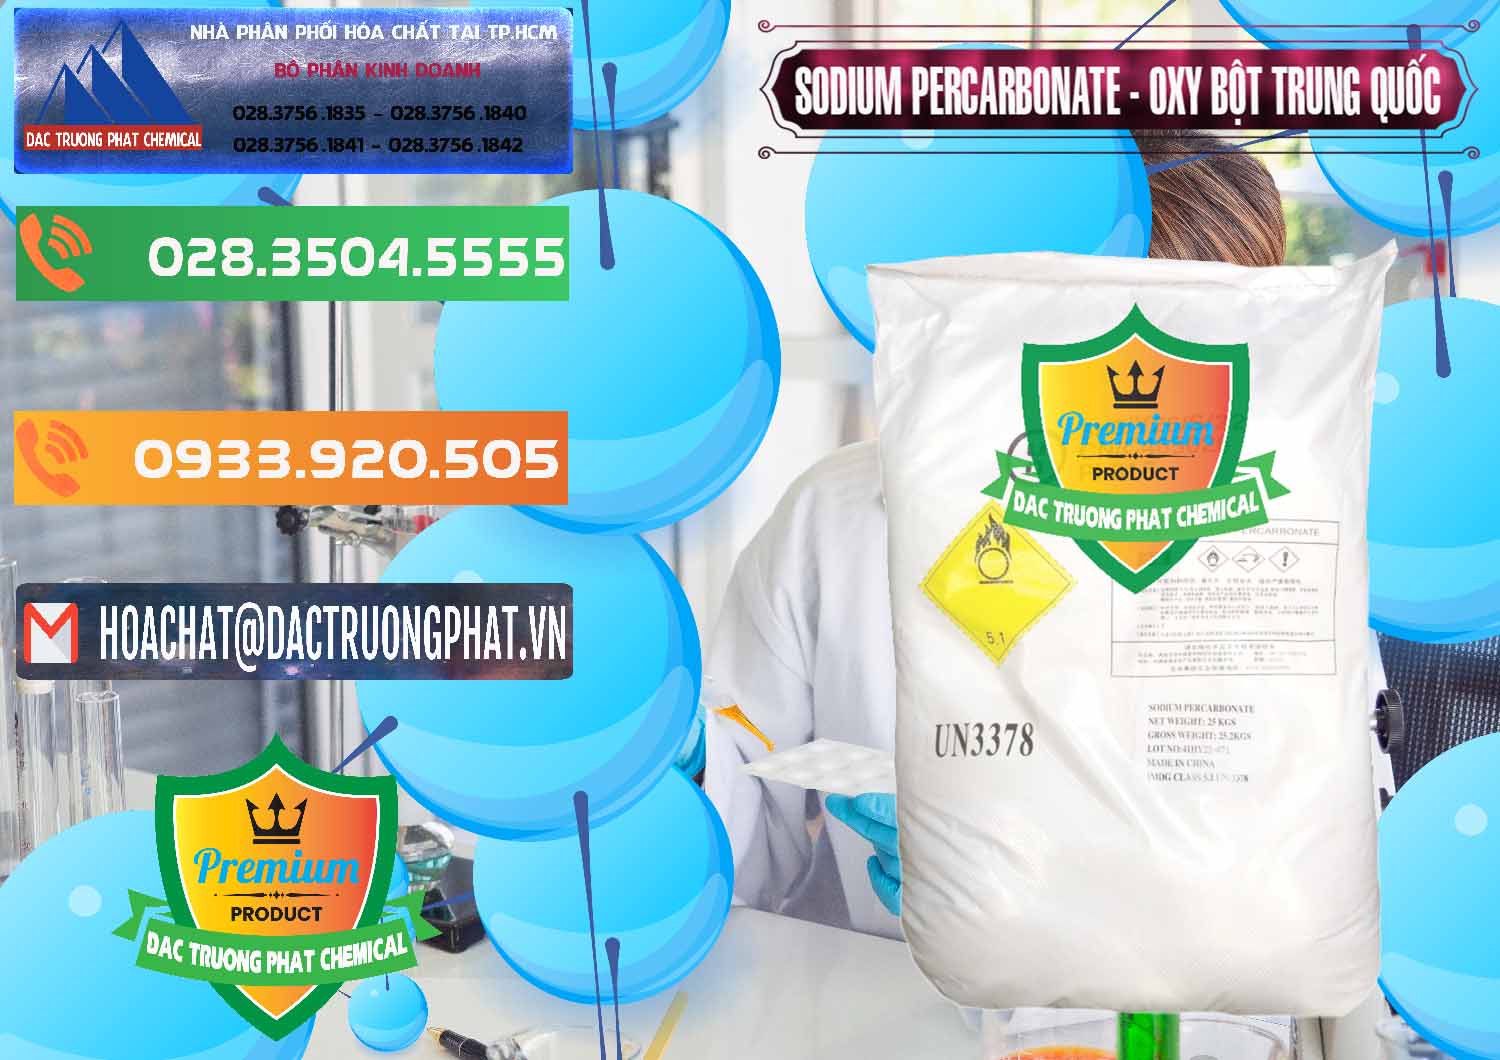 Chuyên cung cấp - bán Sodium Percarbonate Dạng Bột Trung Quốc China - 0390 - Cty cung cấp - bán hóa chất tại TP.HCM - hoachatxulynuoc.com.vn